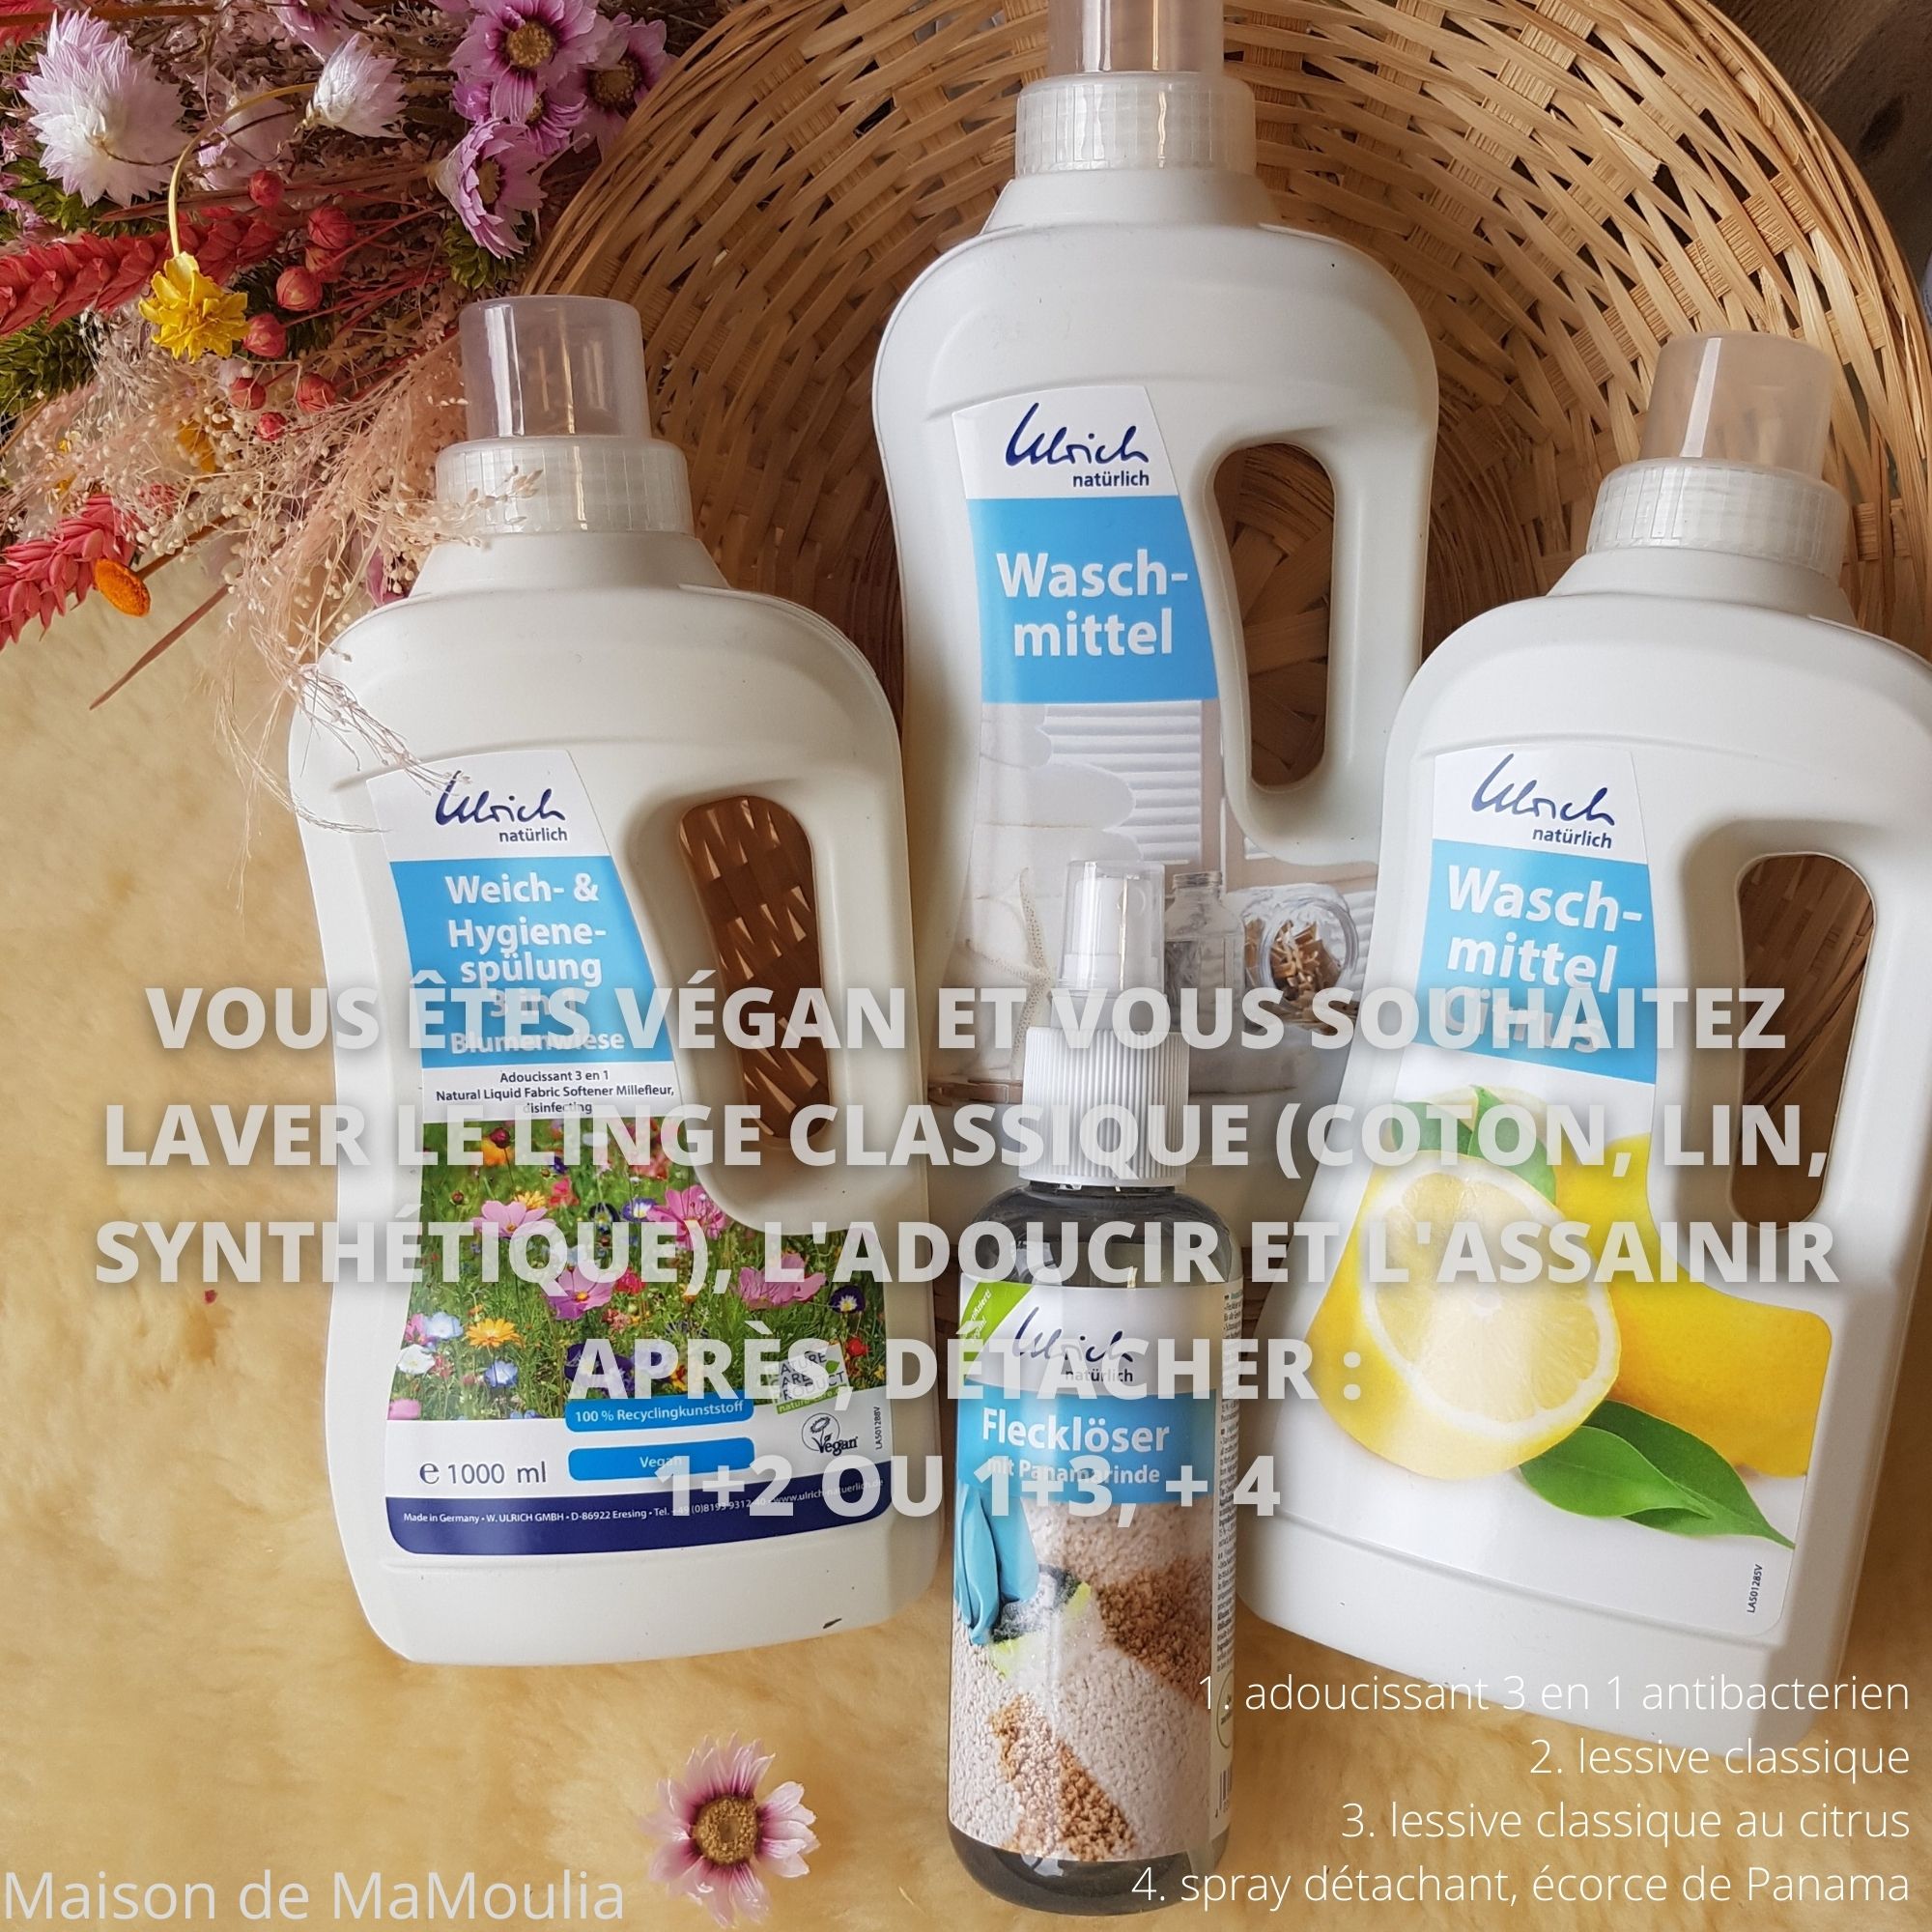 Lessive-classique-coton-linge-ulrich-naturlich-maison-de-mamoulia-citrus-adousissant-antibacterien-spray-detachant-panama